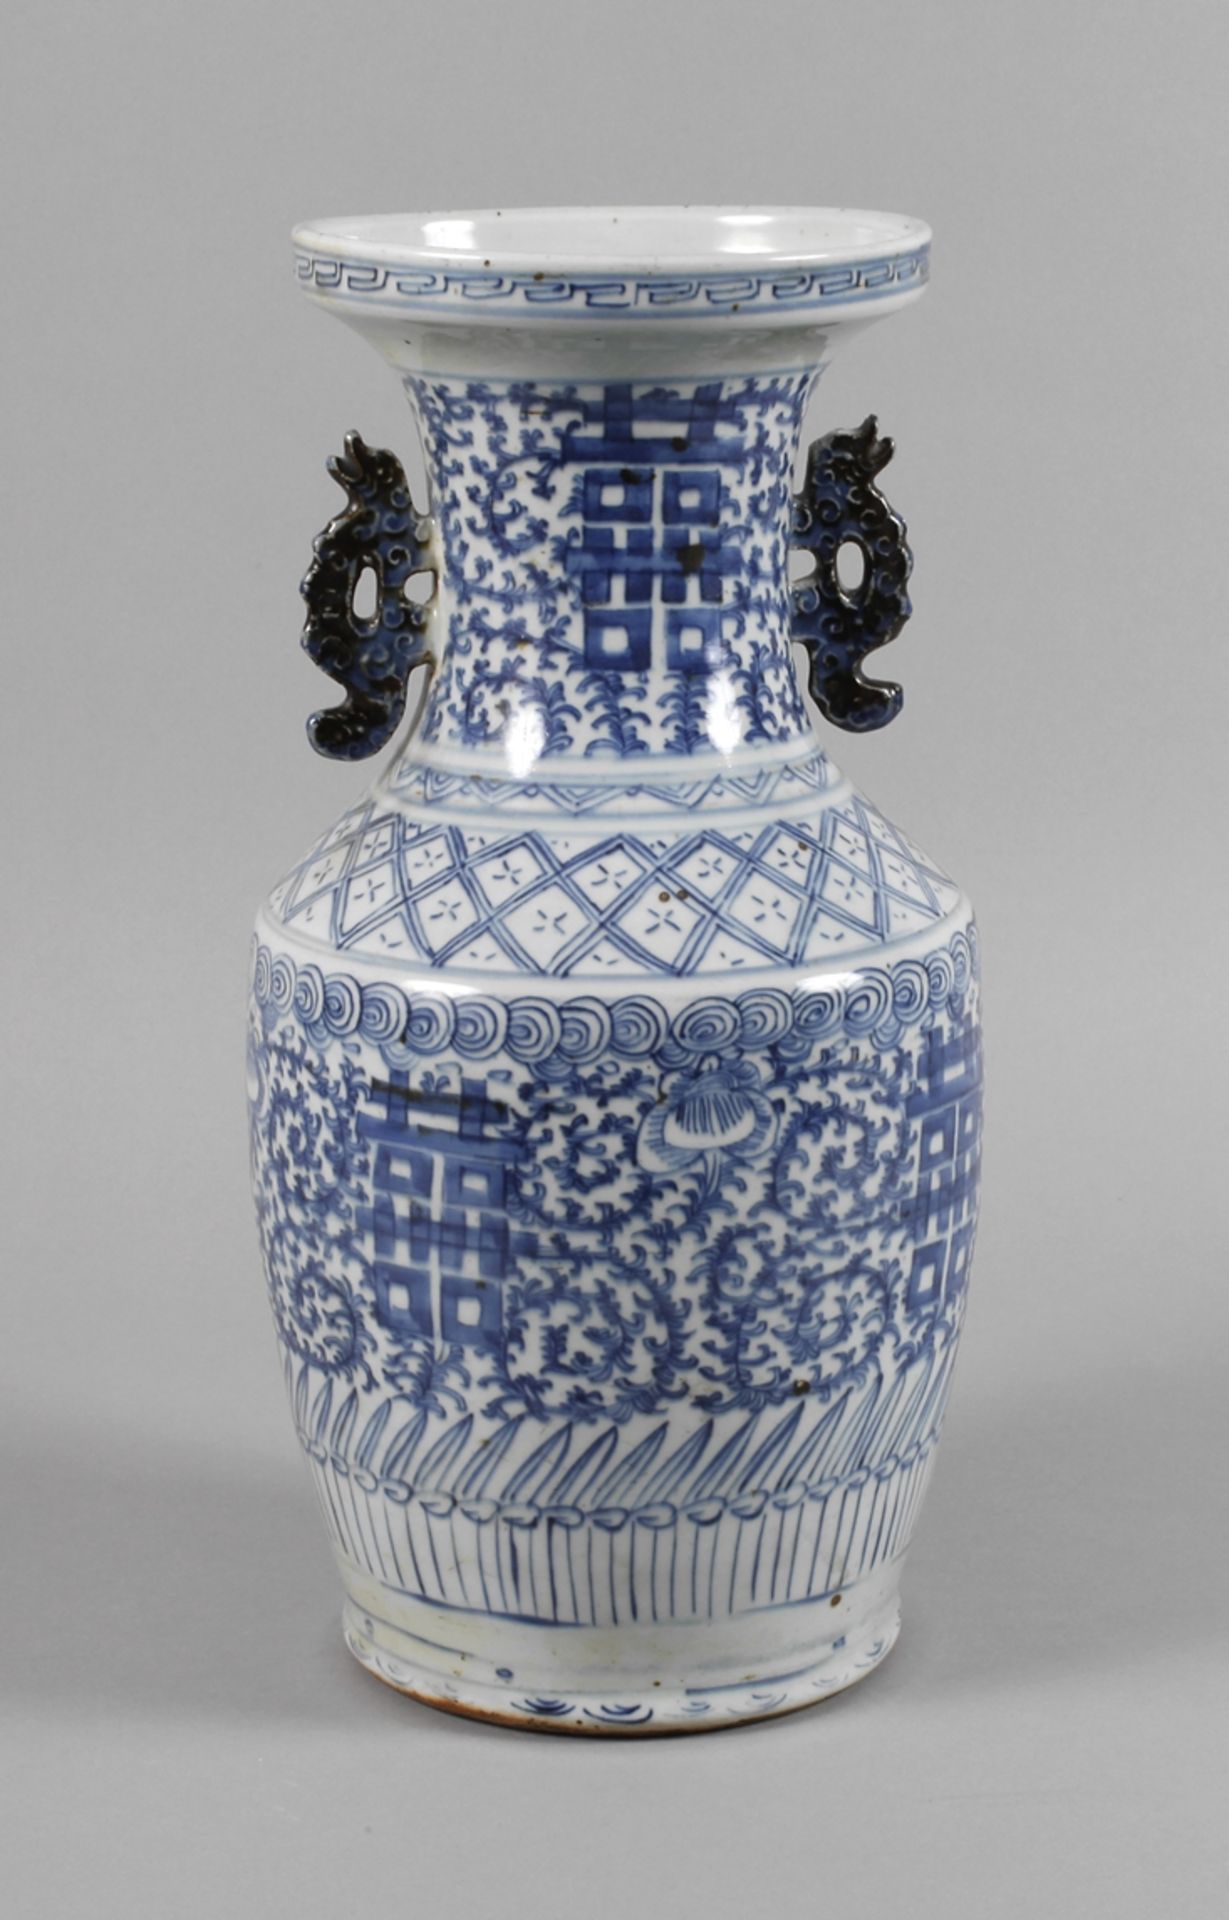 Vase ChinaEnde 19. Jh., ungemarkt, Weißporzellan in kobaltblauer Unterglasurmalerei, leicht